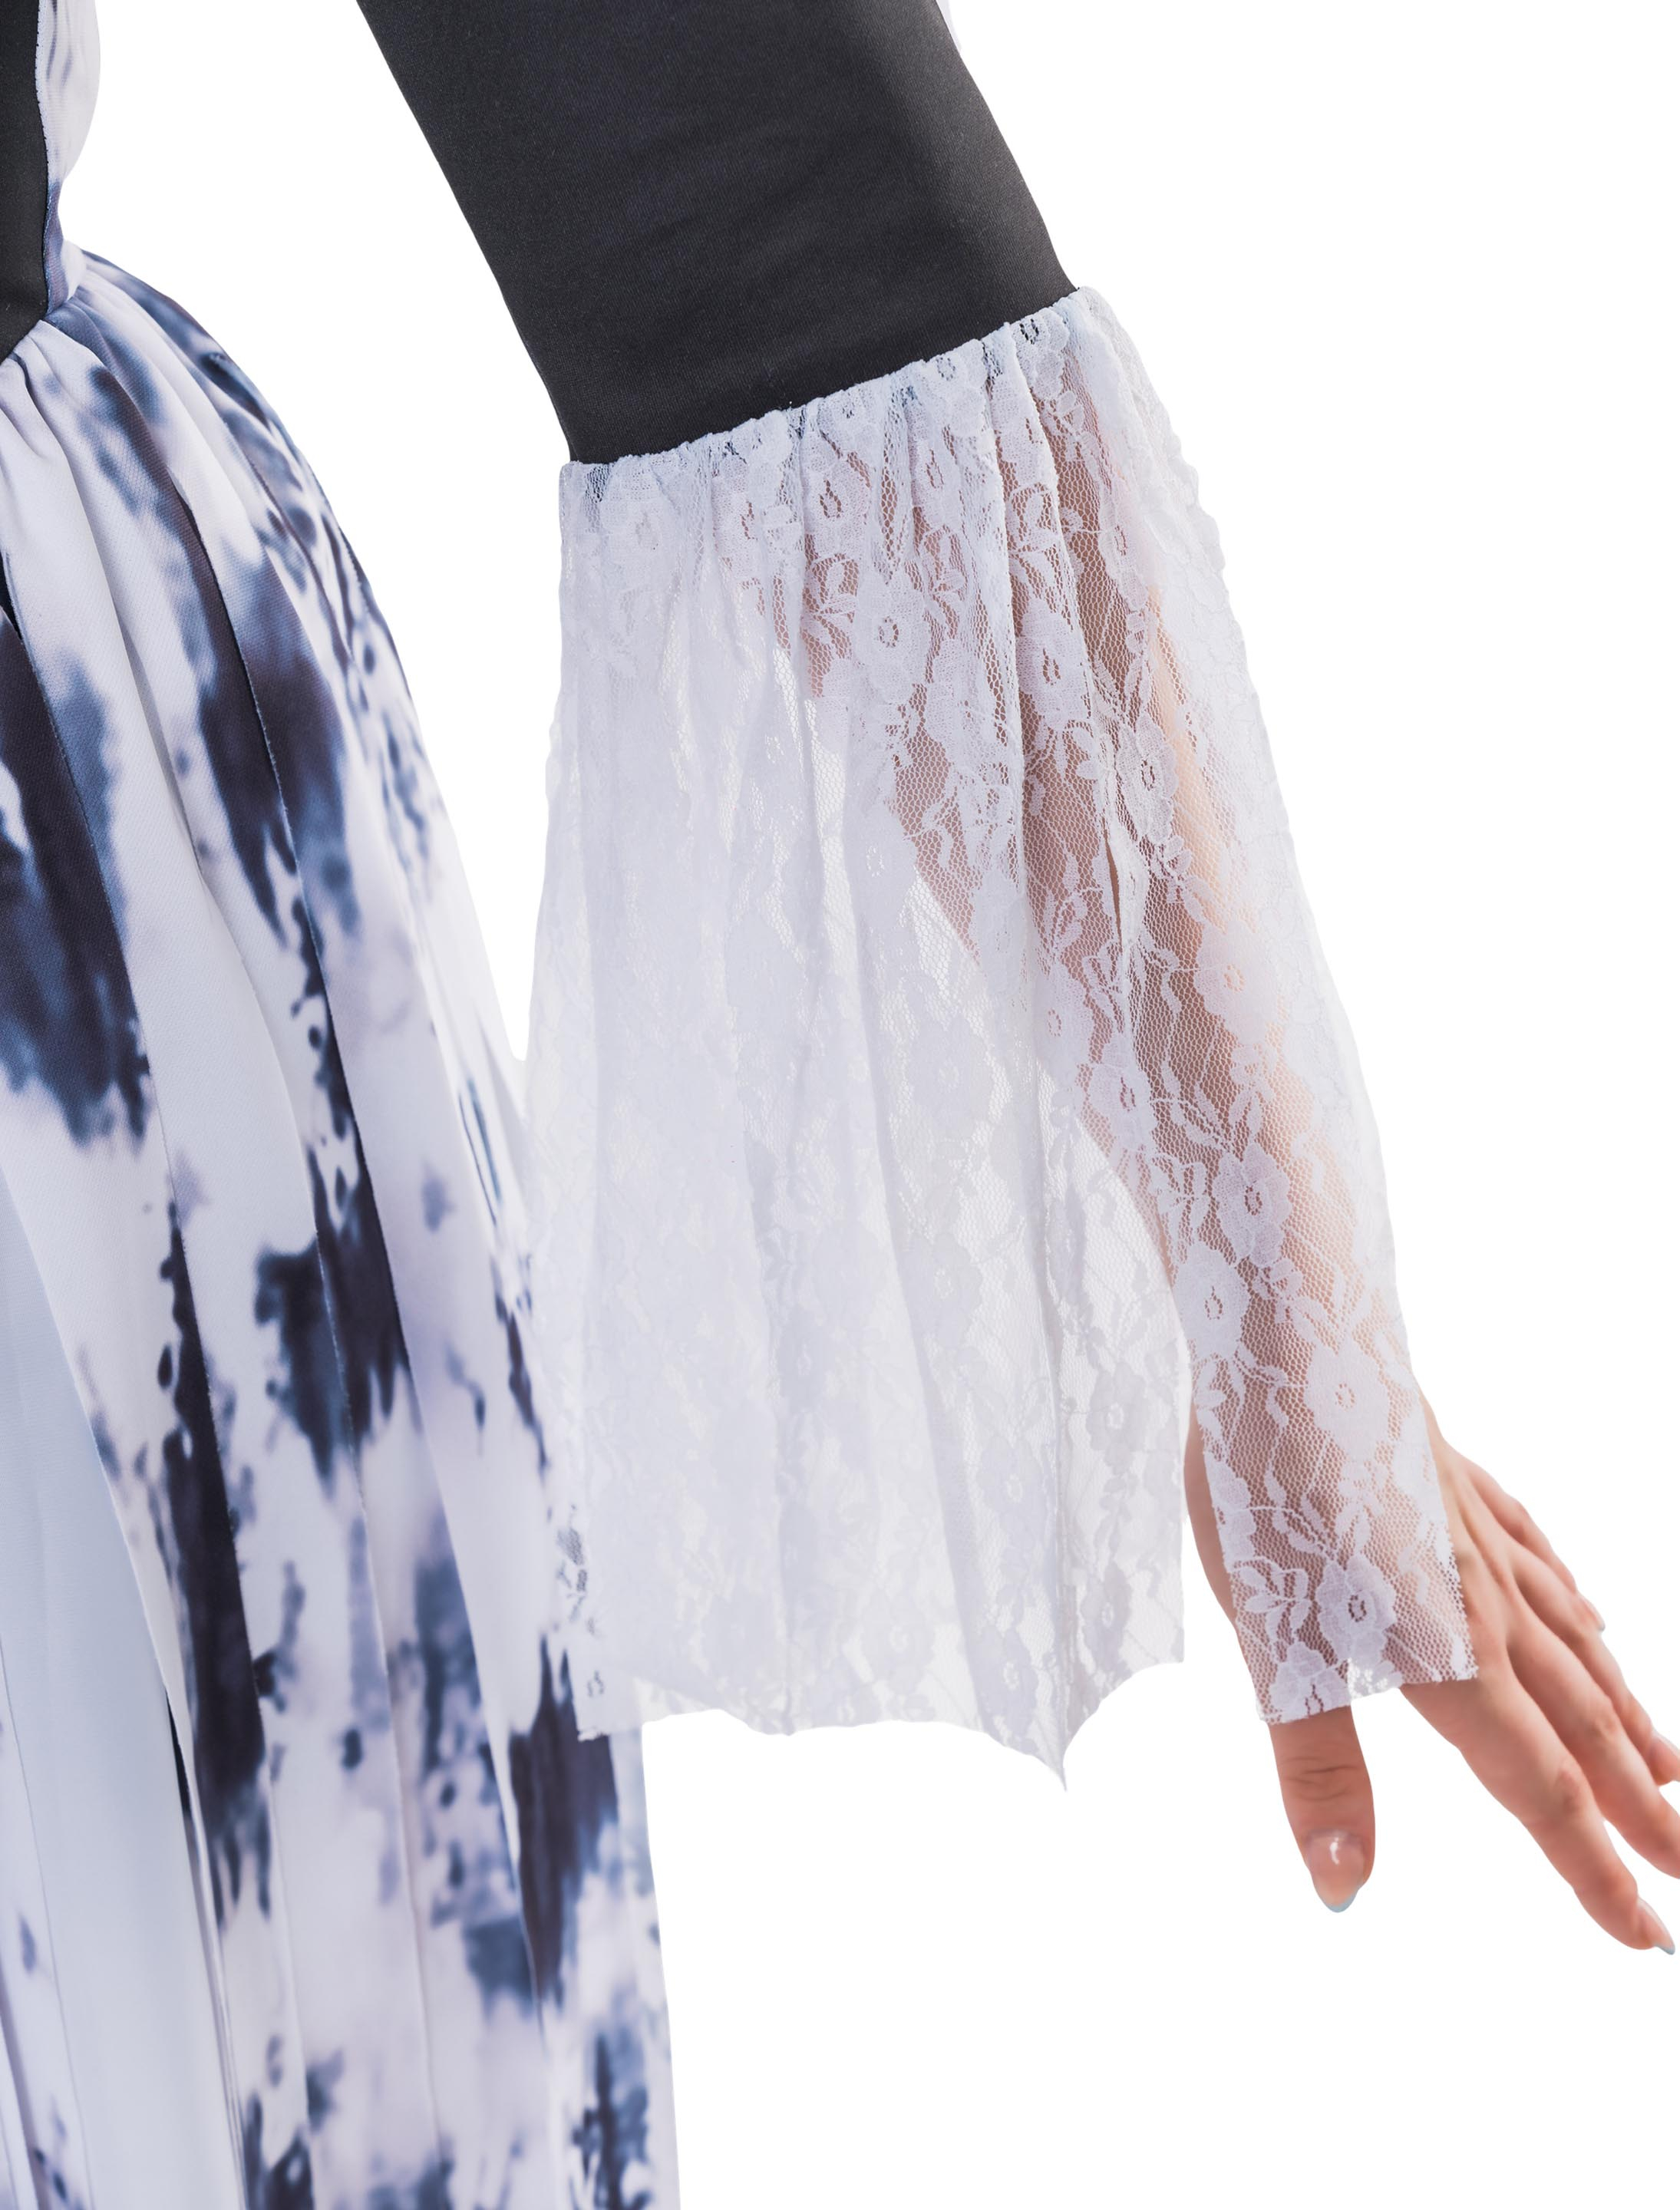 Kleid lang mit Fransen 2-tlg. schwarz/weiß L-XL